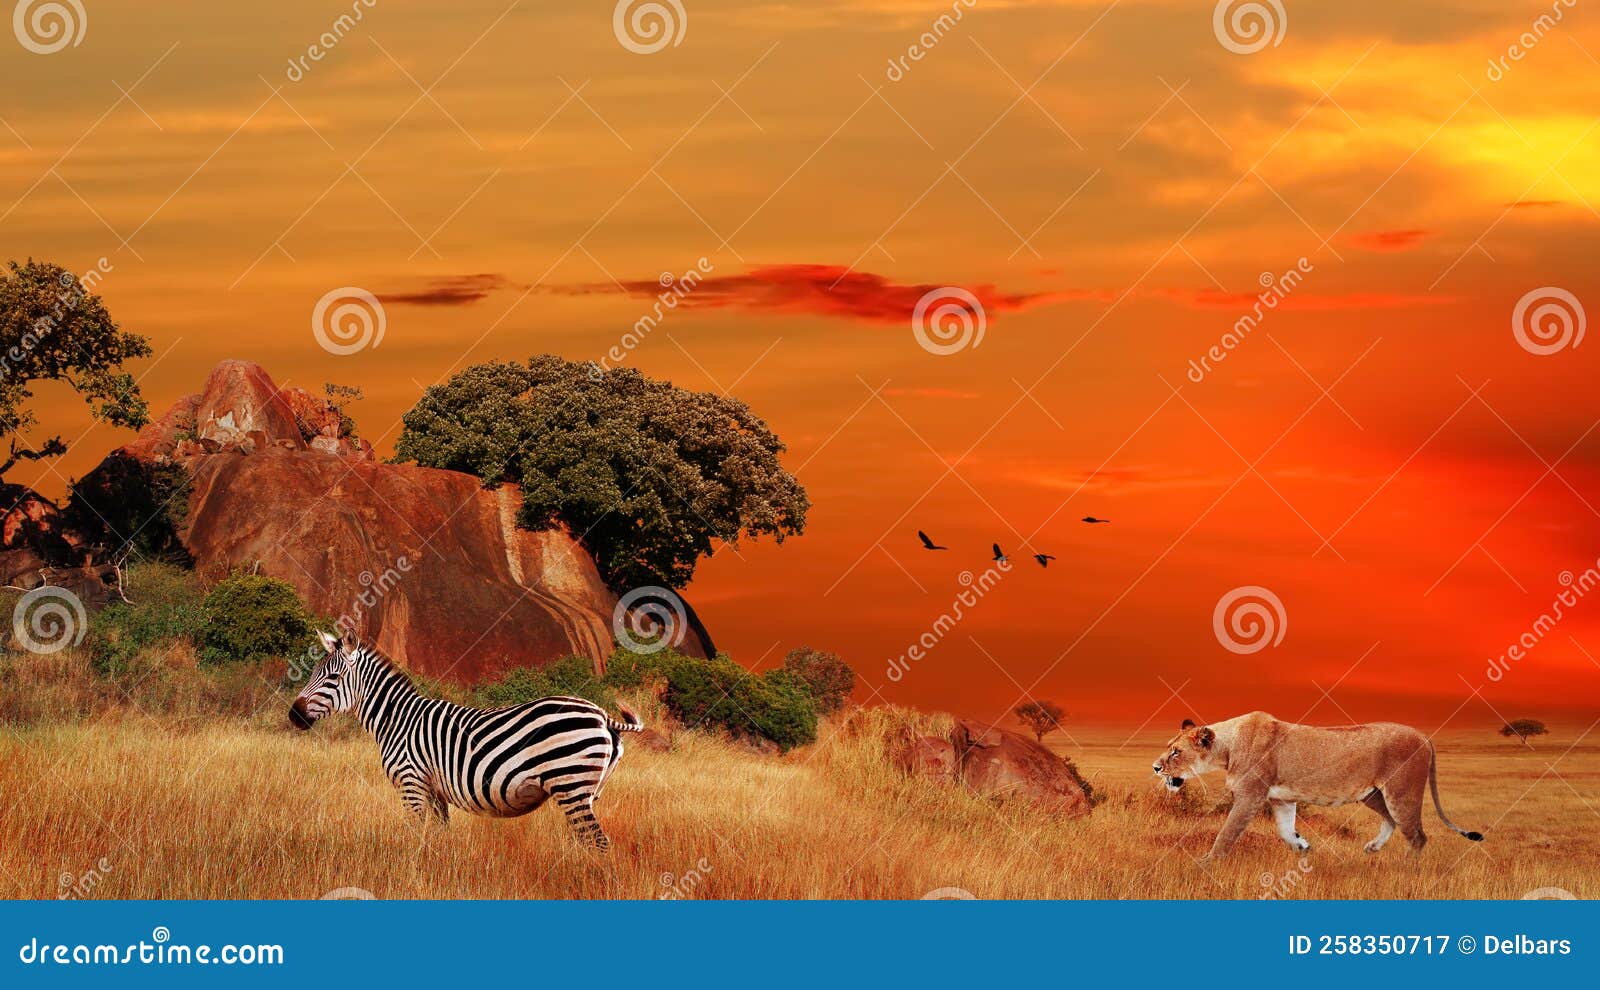 Cacería De Leones En Cebra. áfrica Salvaje. Parque Nacional Serengeti En  Tanzania. Imagen de archivo - Imagen de tanzania, grupo: 258350717